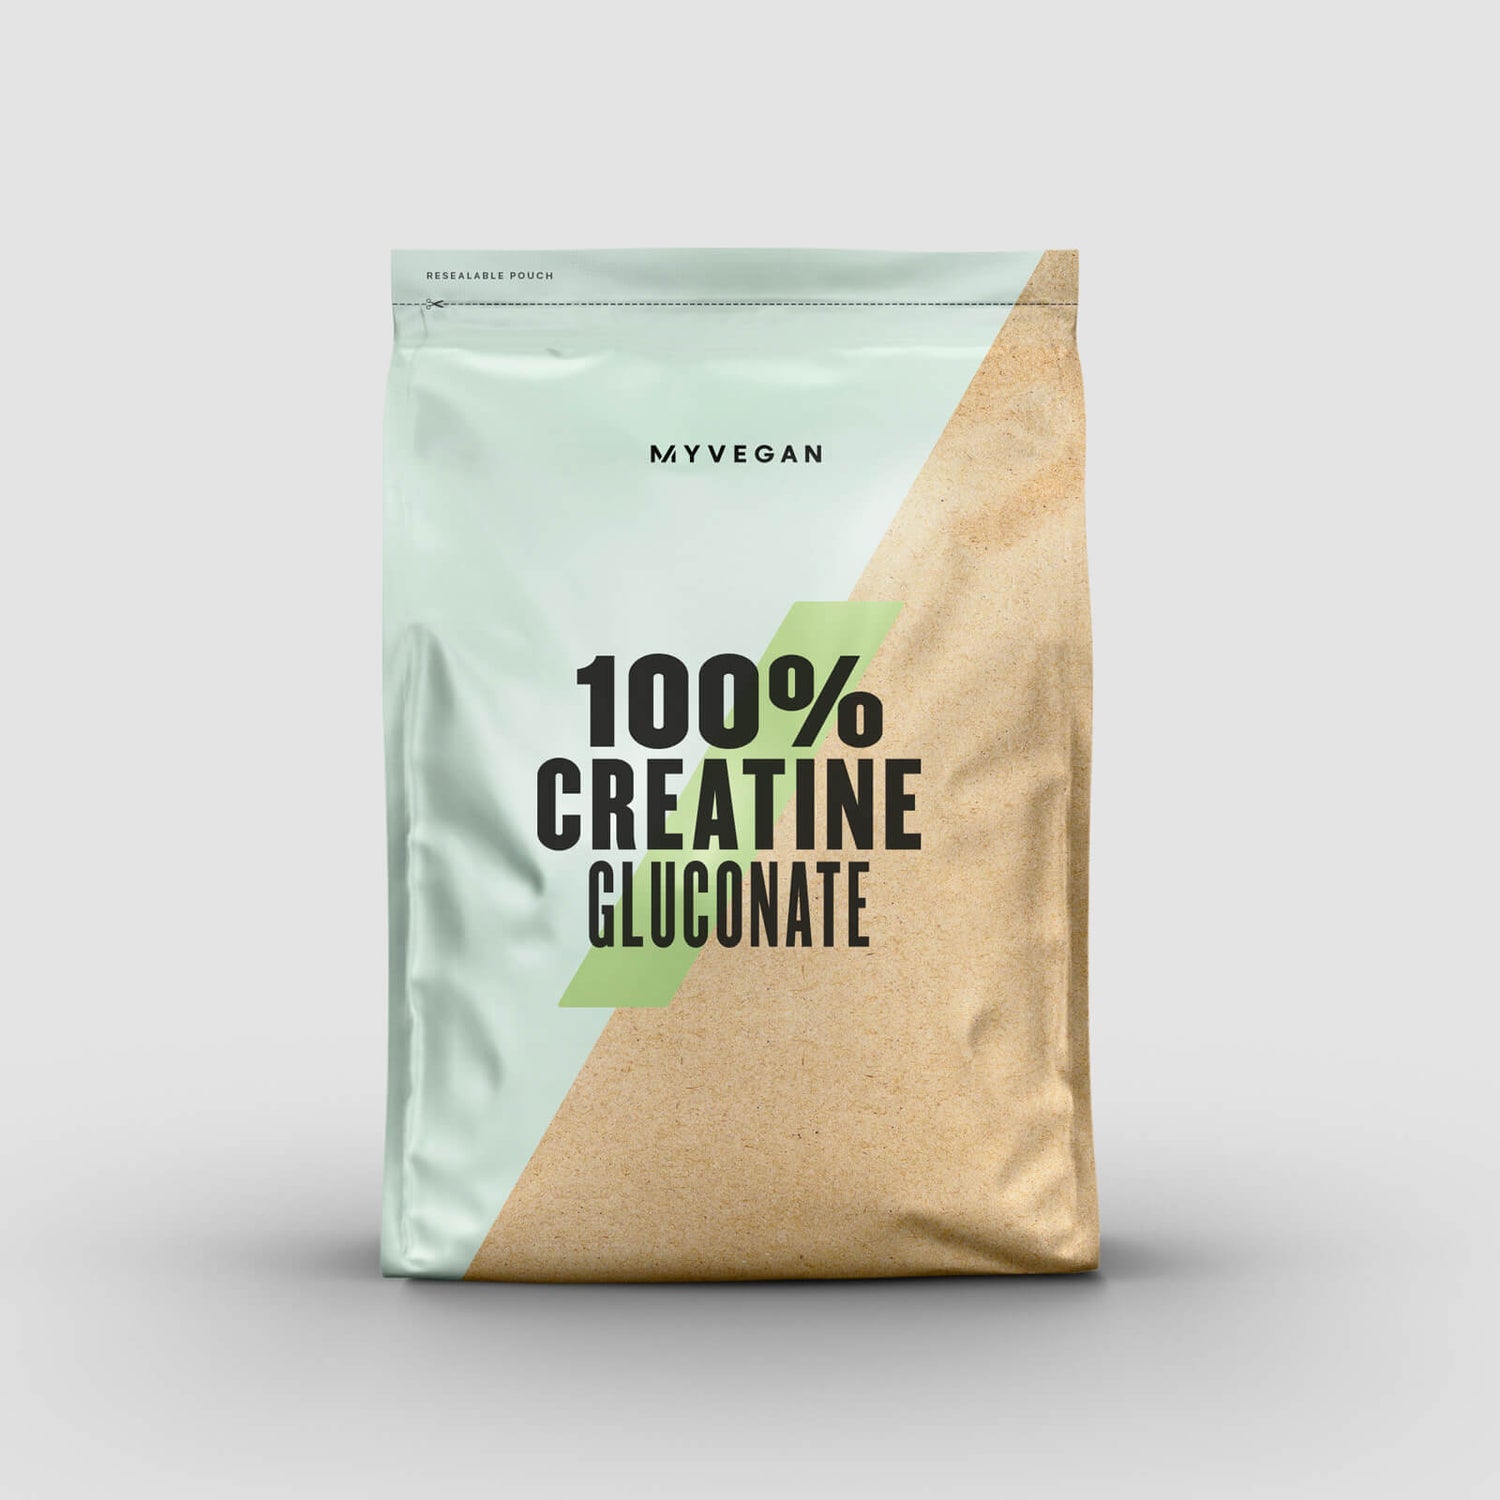 100% Creatine Gluconate Powder